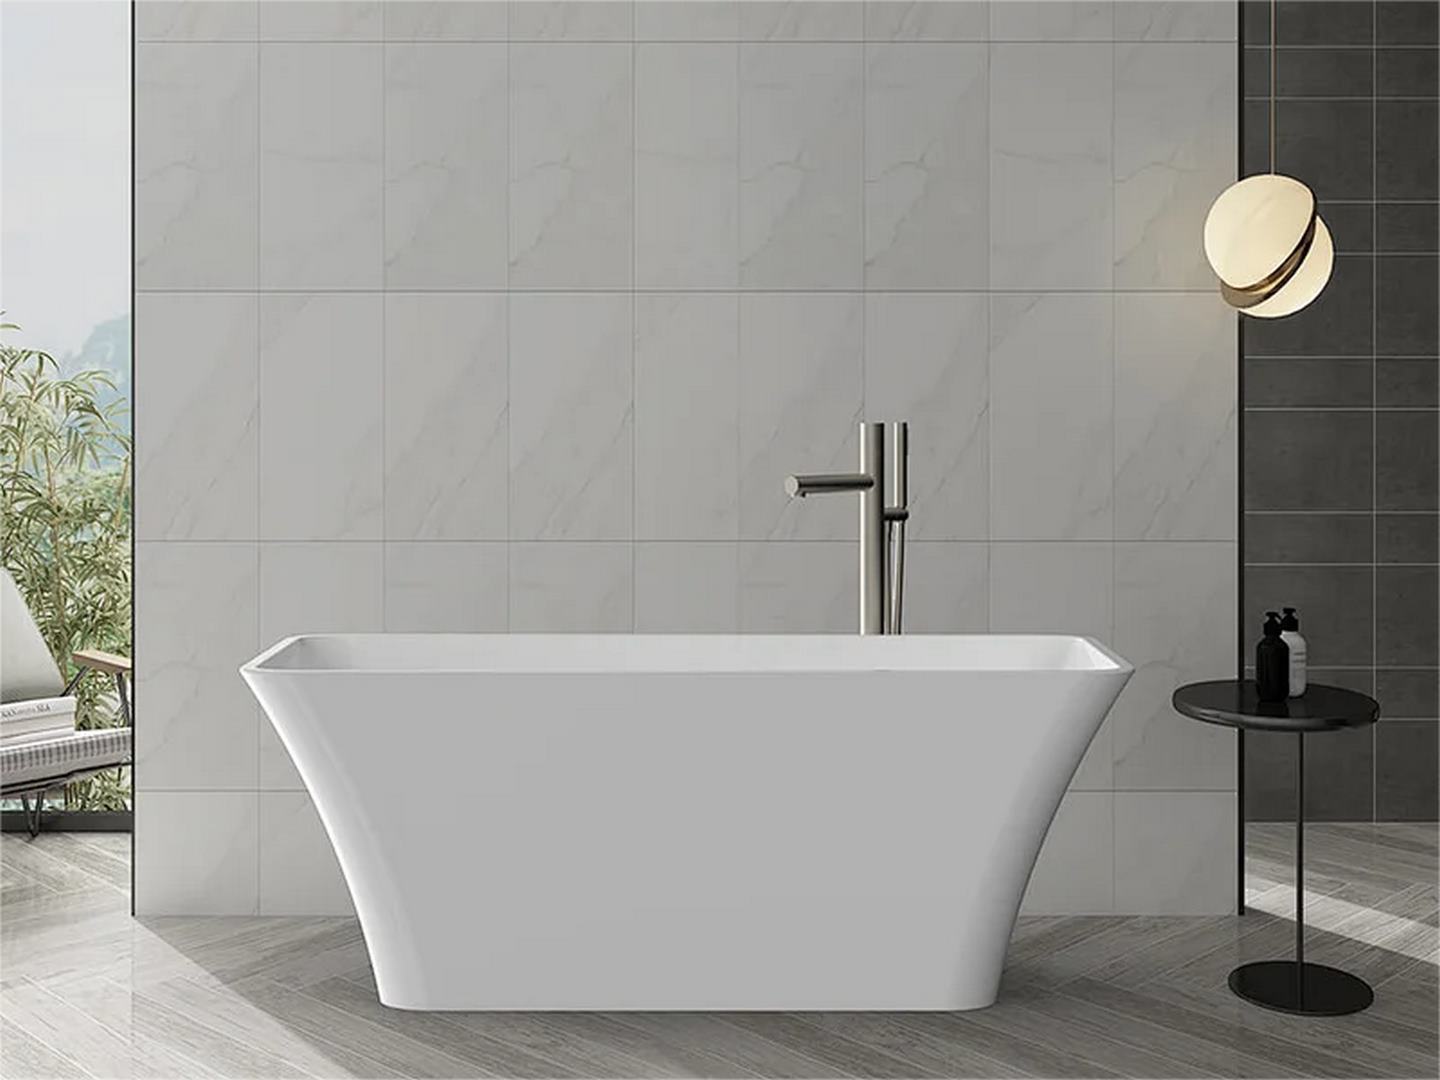 TONA white design bathtub